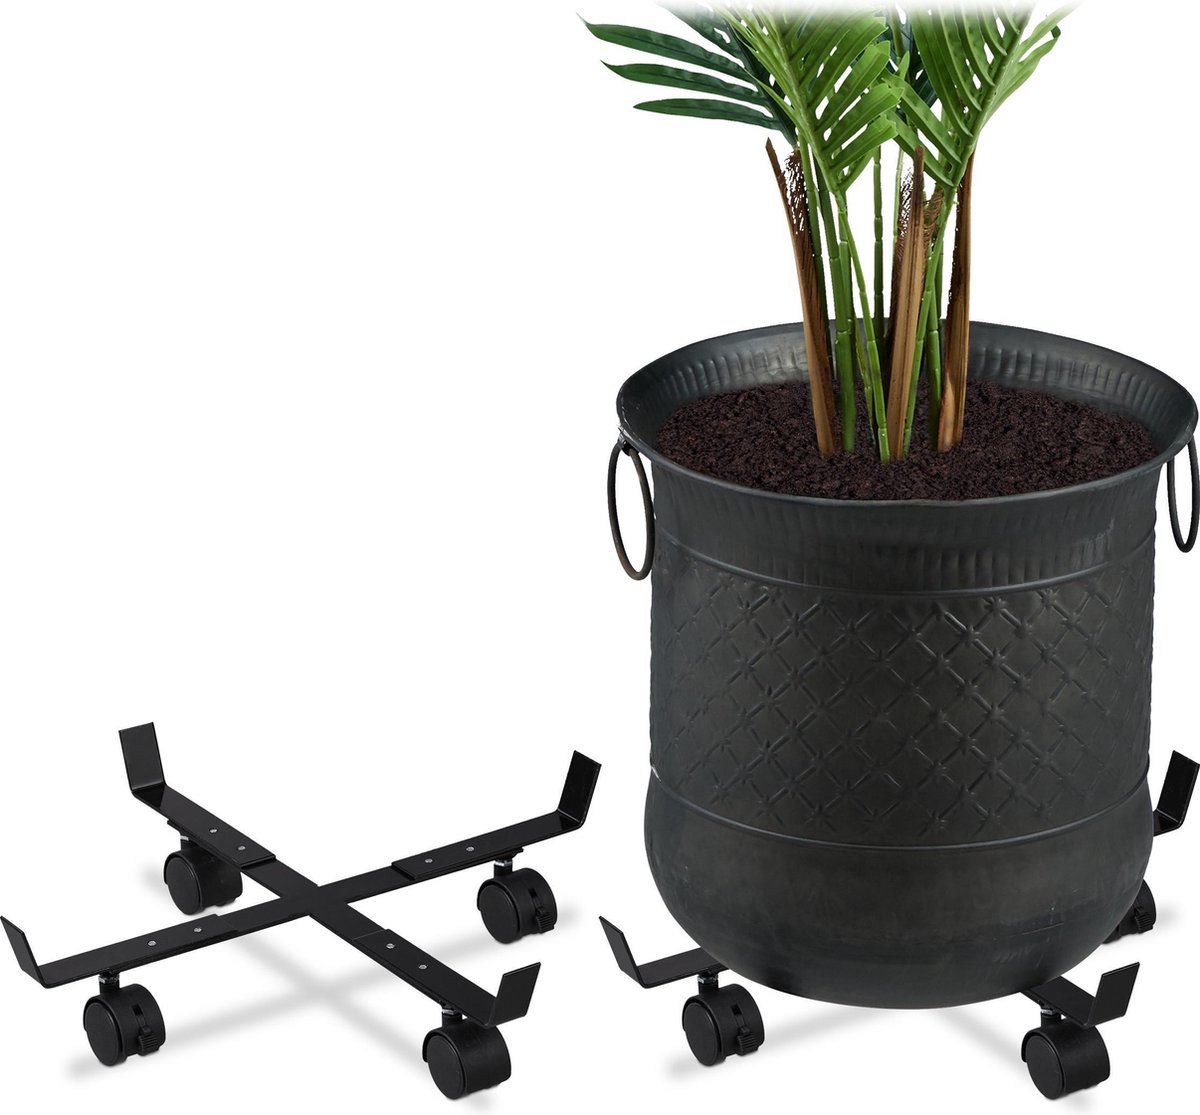 Relaxdays 2x plantentrolley plantenonderzetter op wielen plantenroller verstelbaar